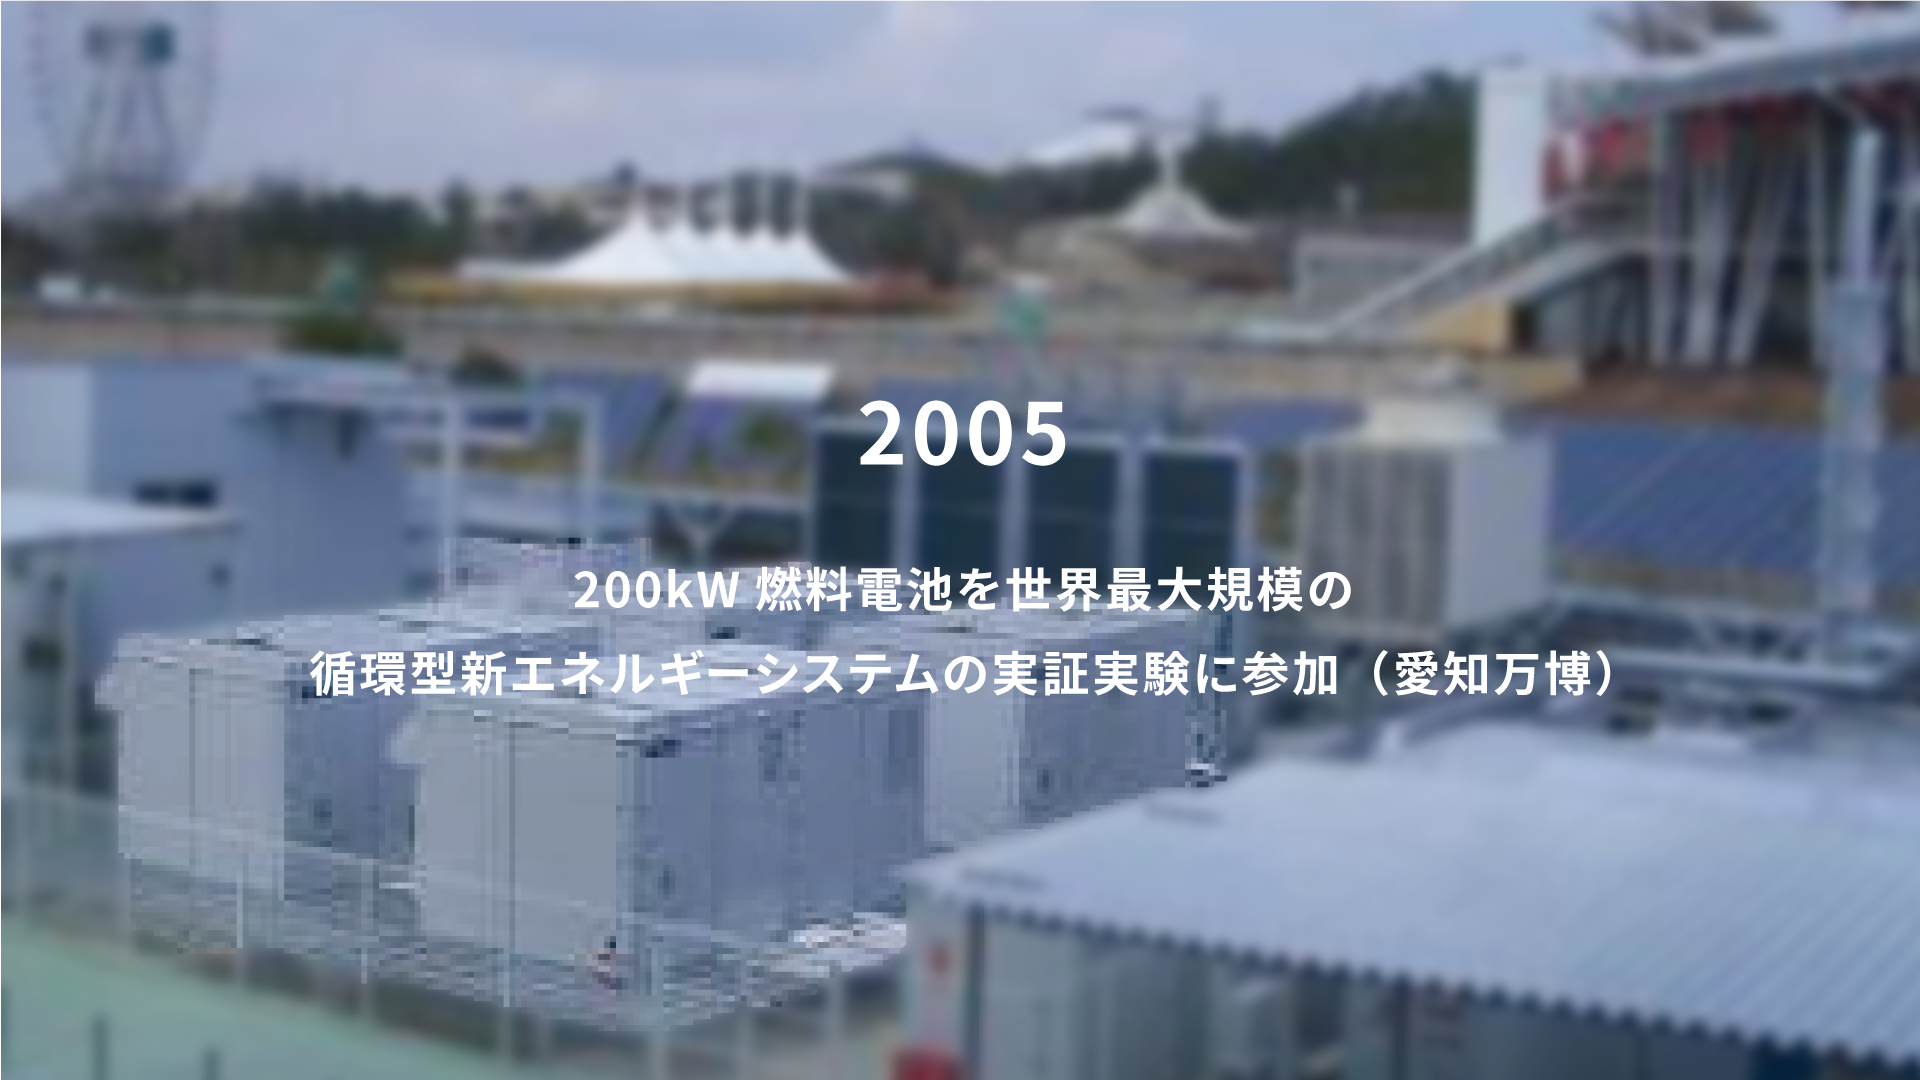 2005年 200kW燃料電池を世界最大規模の循環型新エネルギーシステムの実証実験に参加（愛知万博）